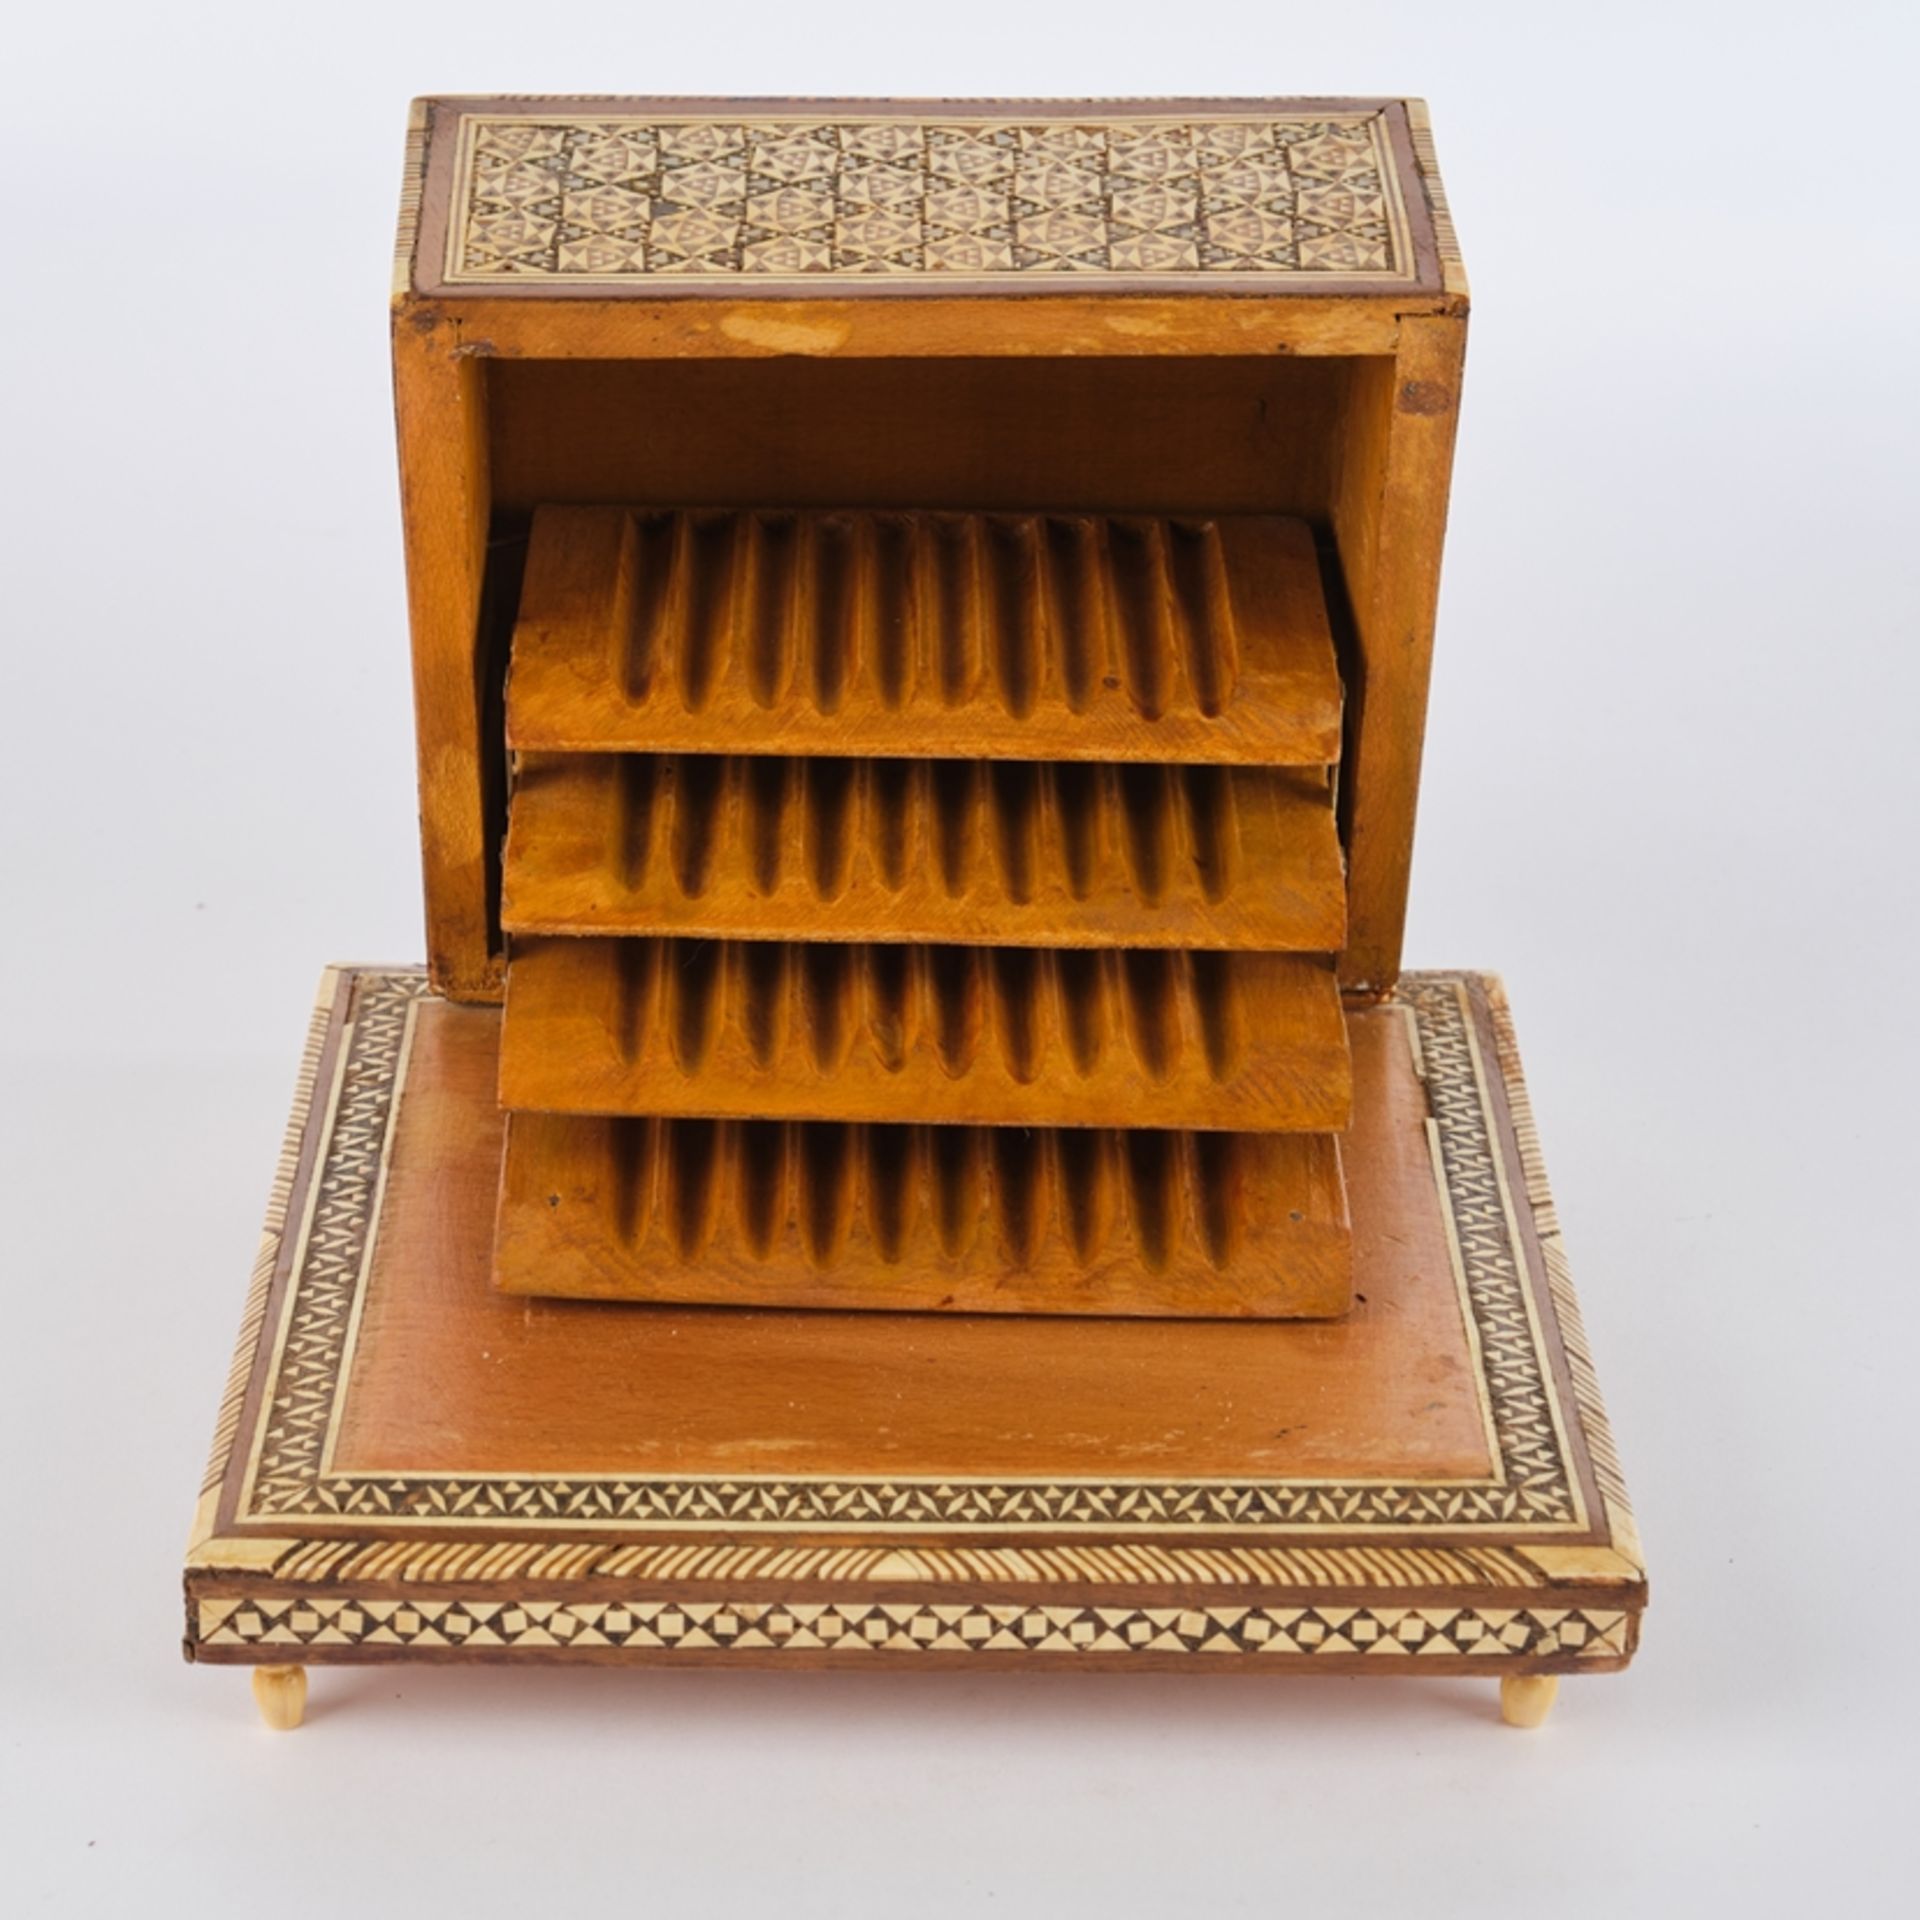 Zigarettenkasten, 1. Hälfte 20. Jh., Holz, Bein, Perlmutt, orientalischer Dekor, aufklappbar, innen - Bild 2 aus 2